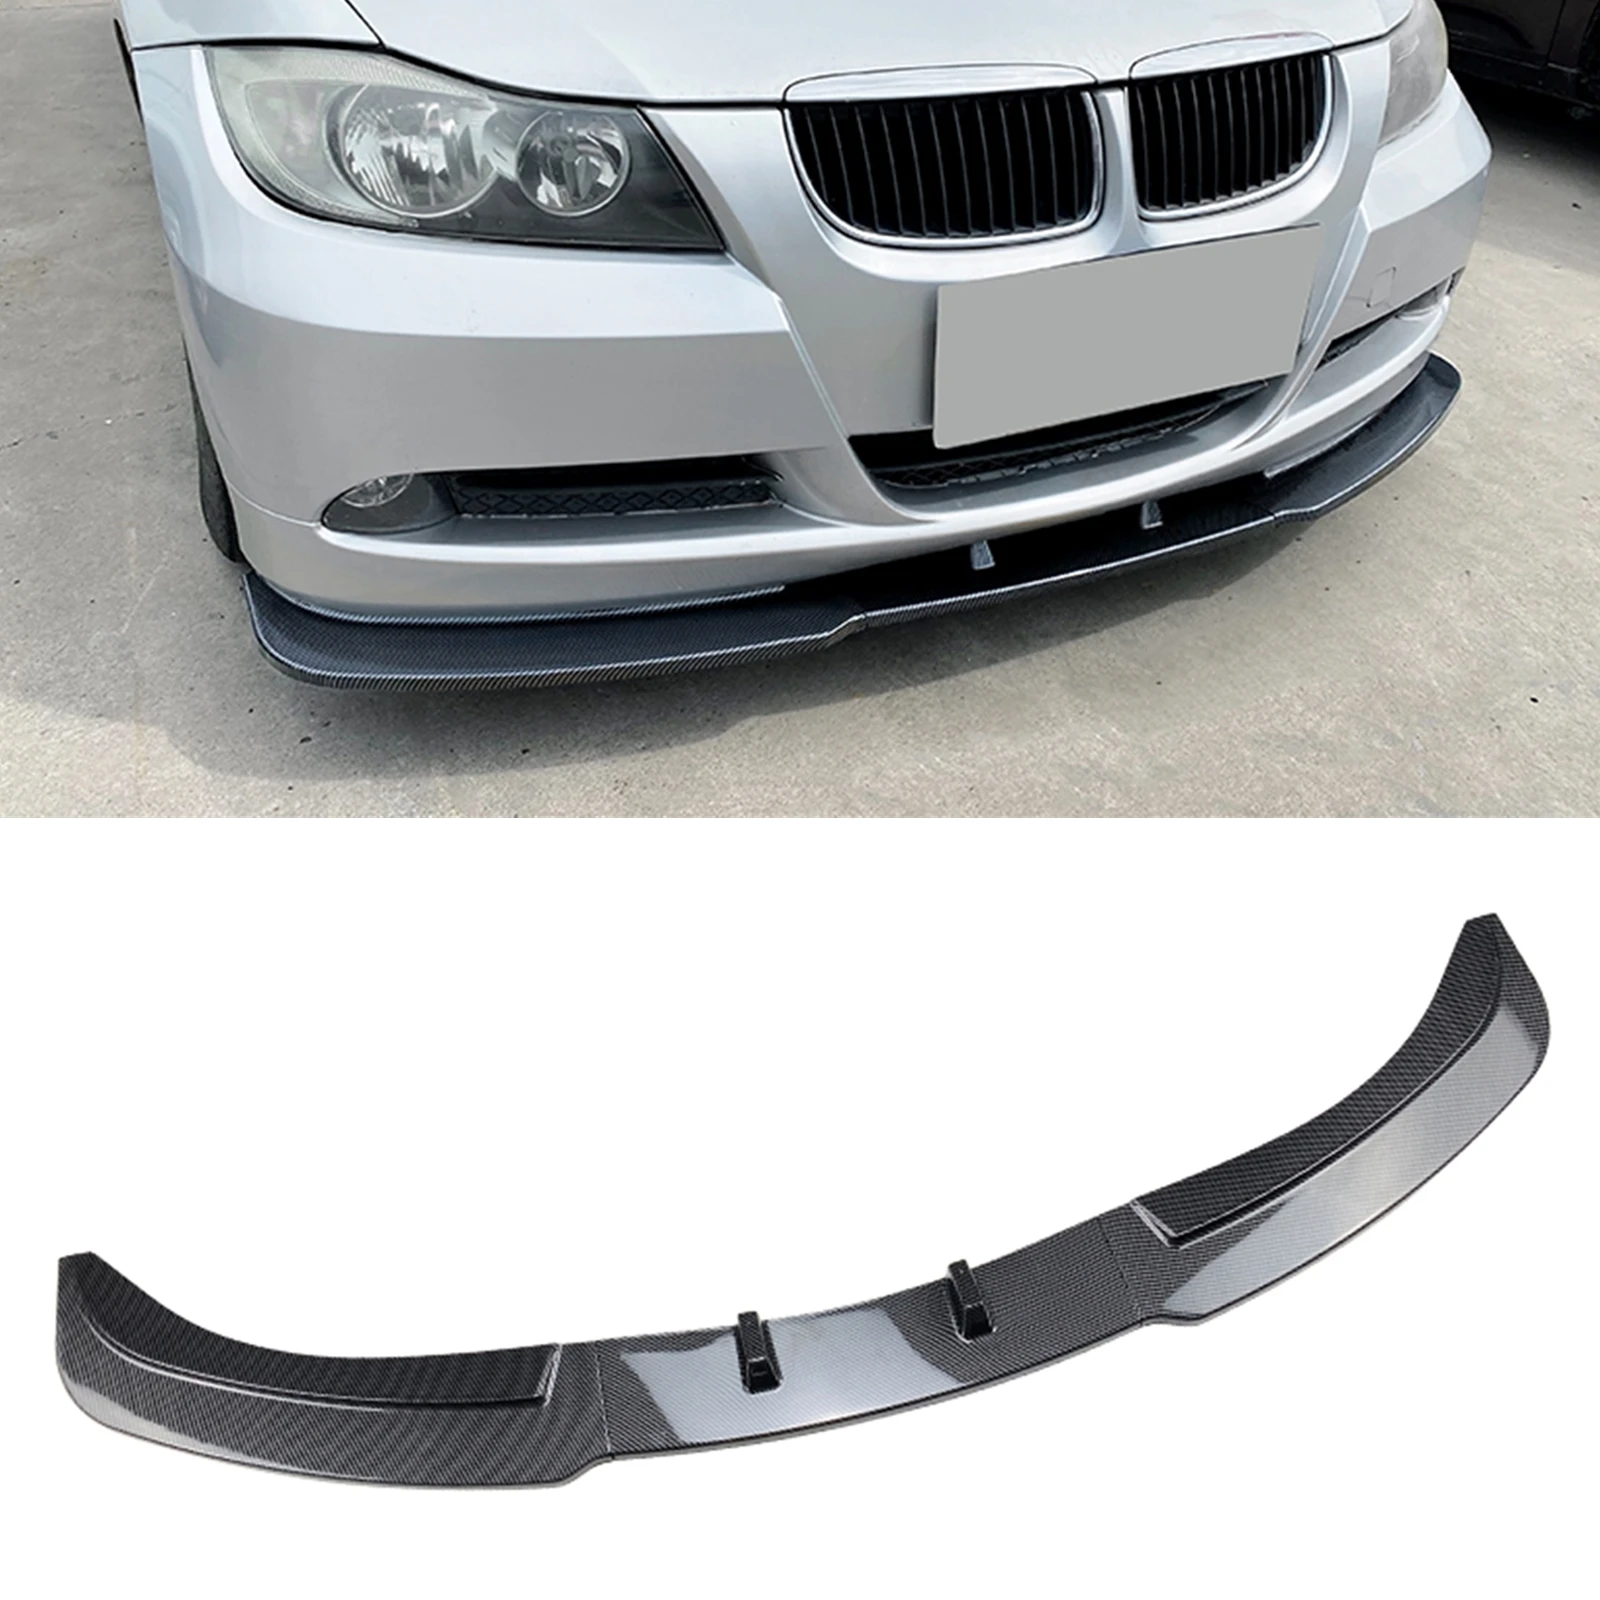 

For BMW 3 Series E90 E91 2005-2008 320i 330i Base Sedan Front Bumper Spoiler Lip Carbon Fiber Look Car Lower Splitter Blade Kit